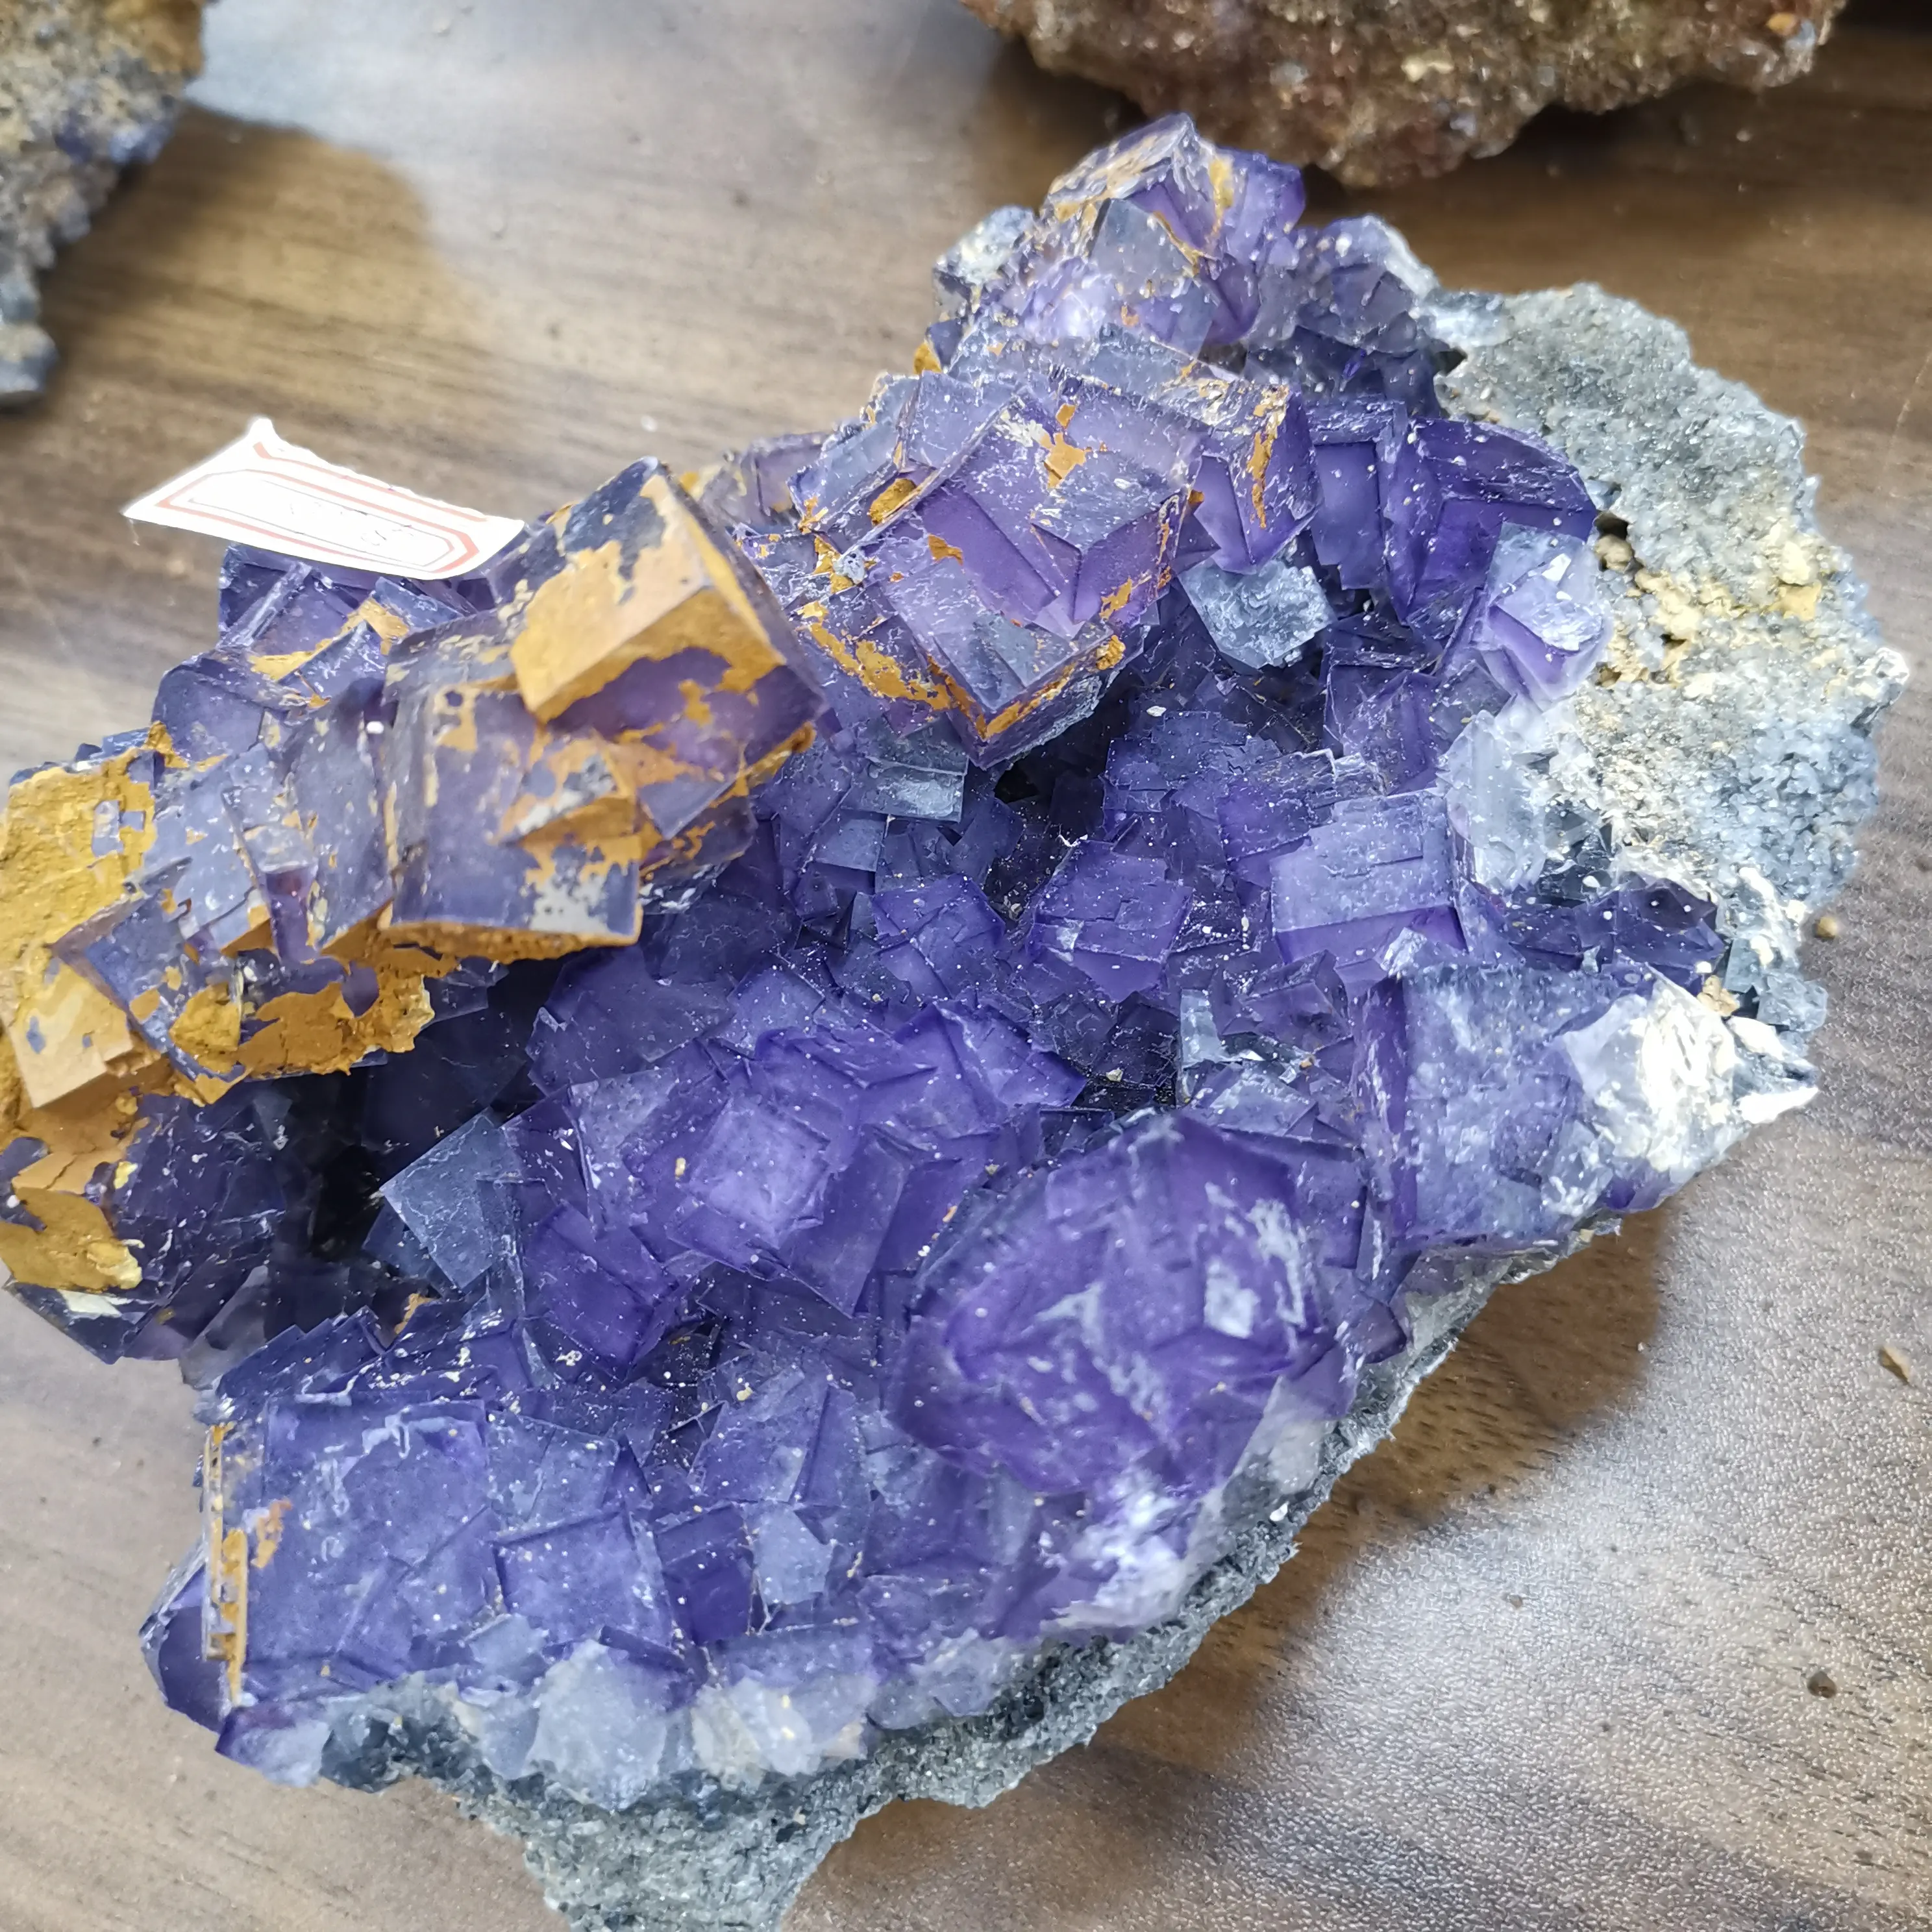 Оптовая продажа натуральных драгоценных камней, лечебный камень, Фиолетовый флюорит, кластер кристалла, образец